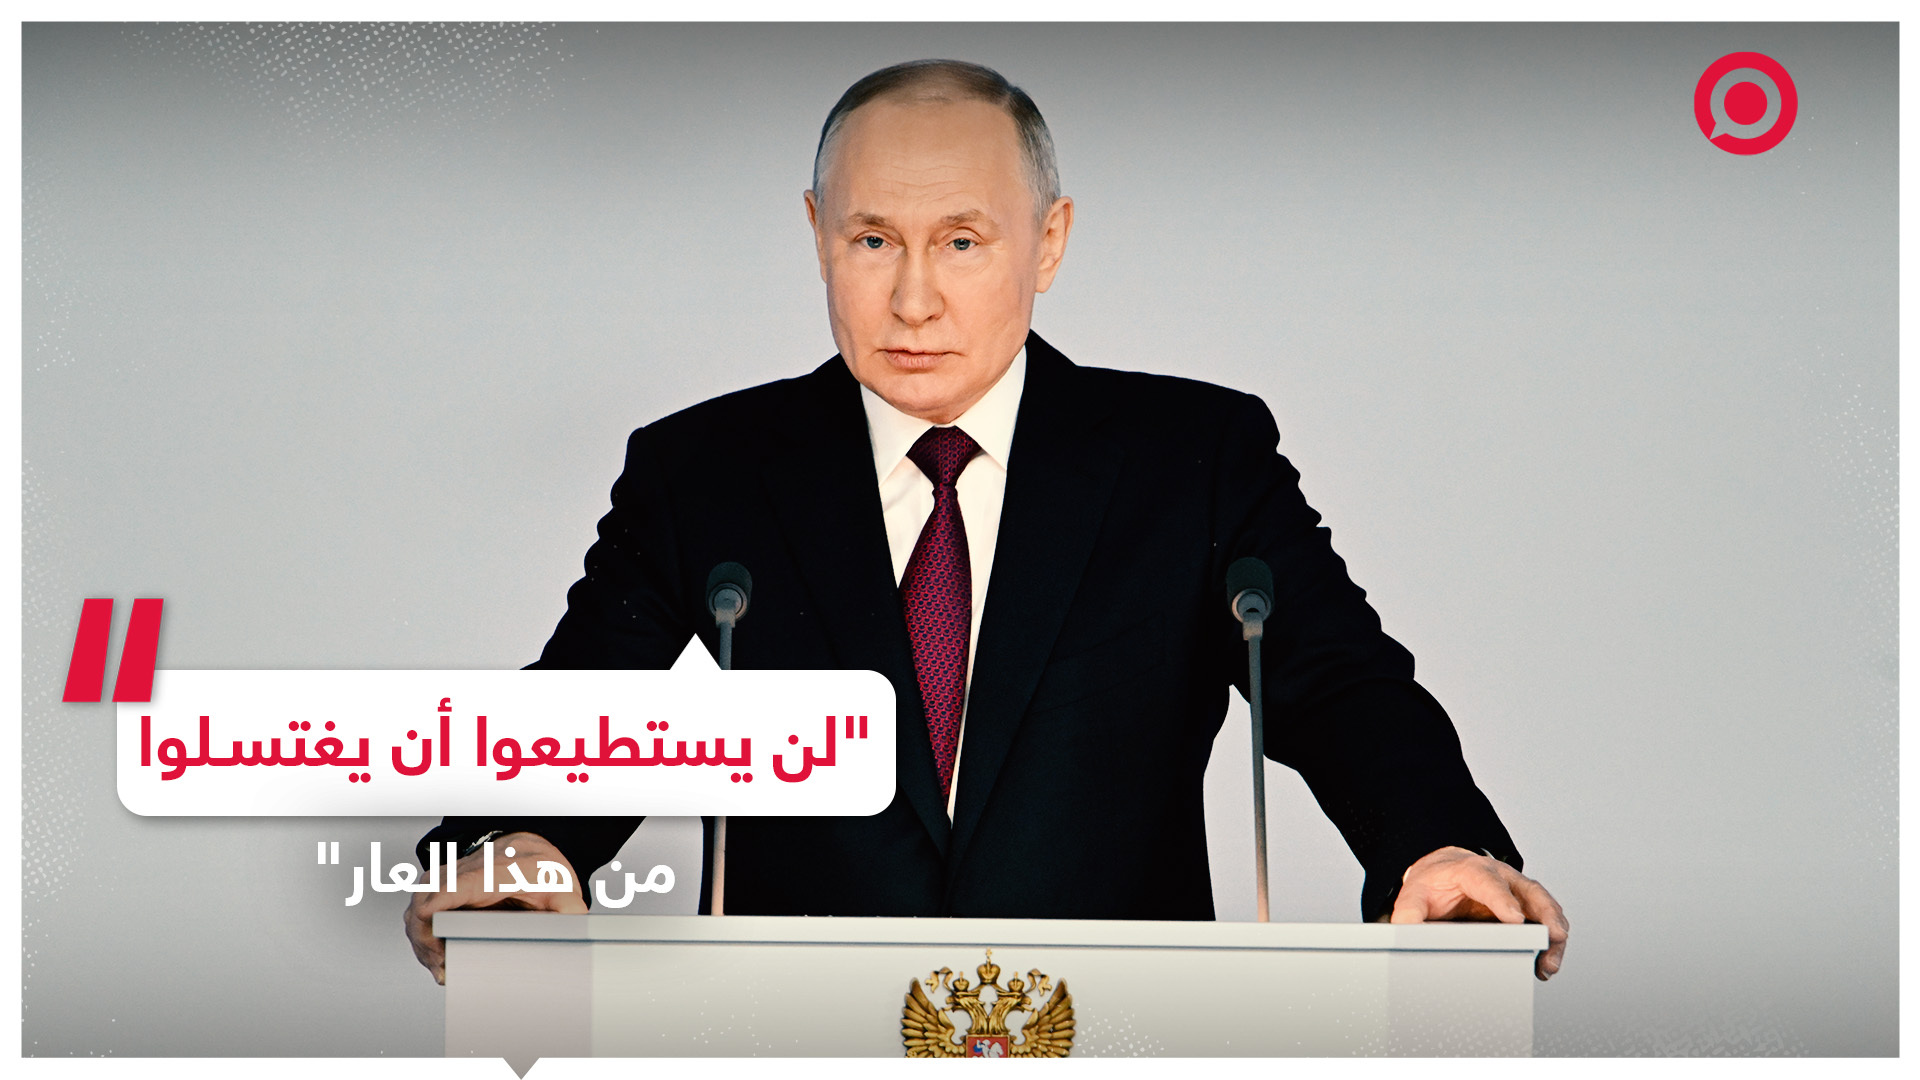 الرئيس الروسي فلاديمير بوتين يتحدث عن كذب الغرب وازدواجية المعايير